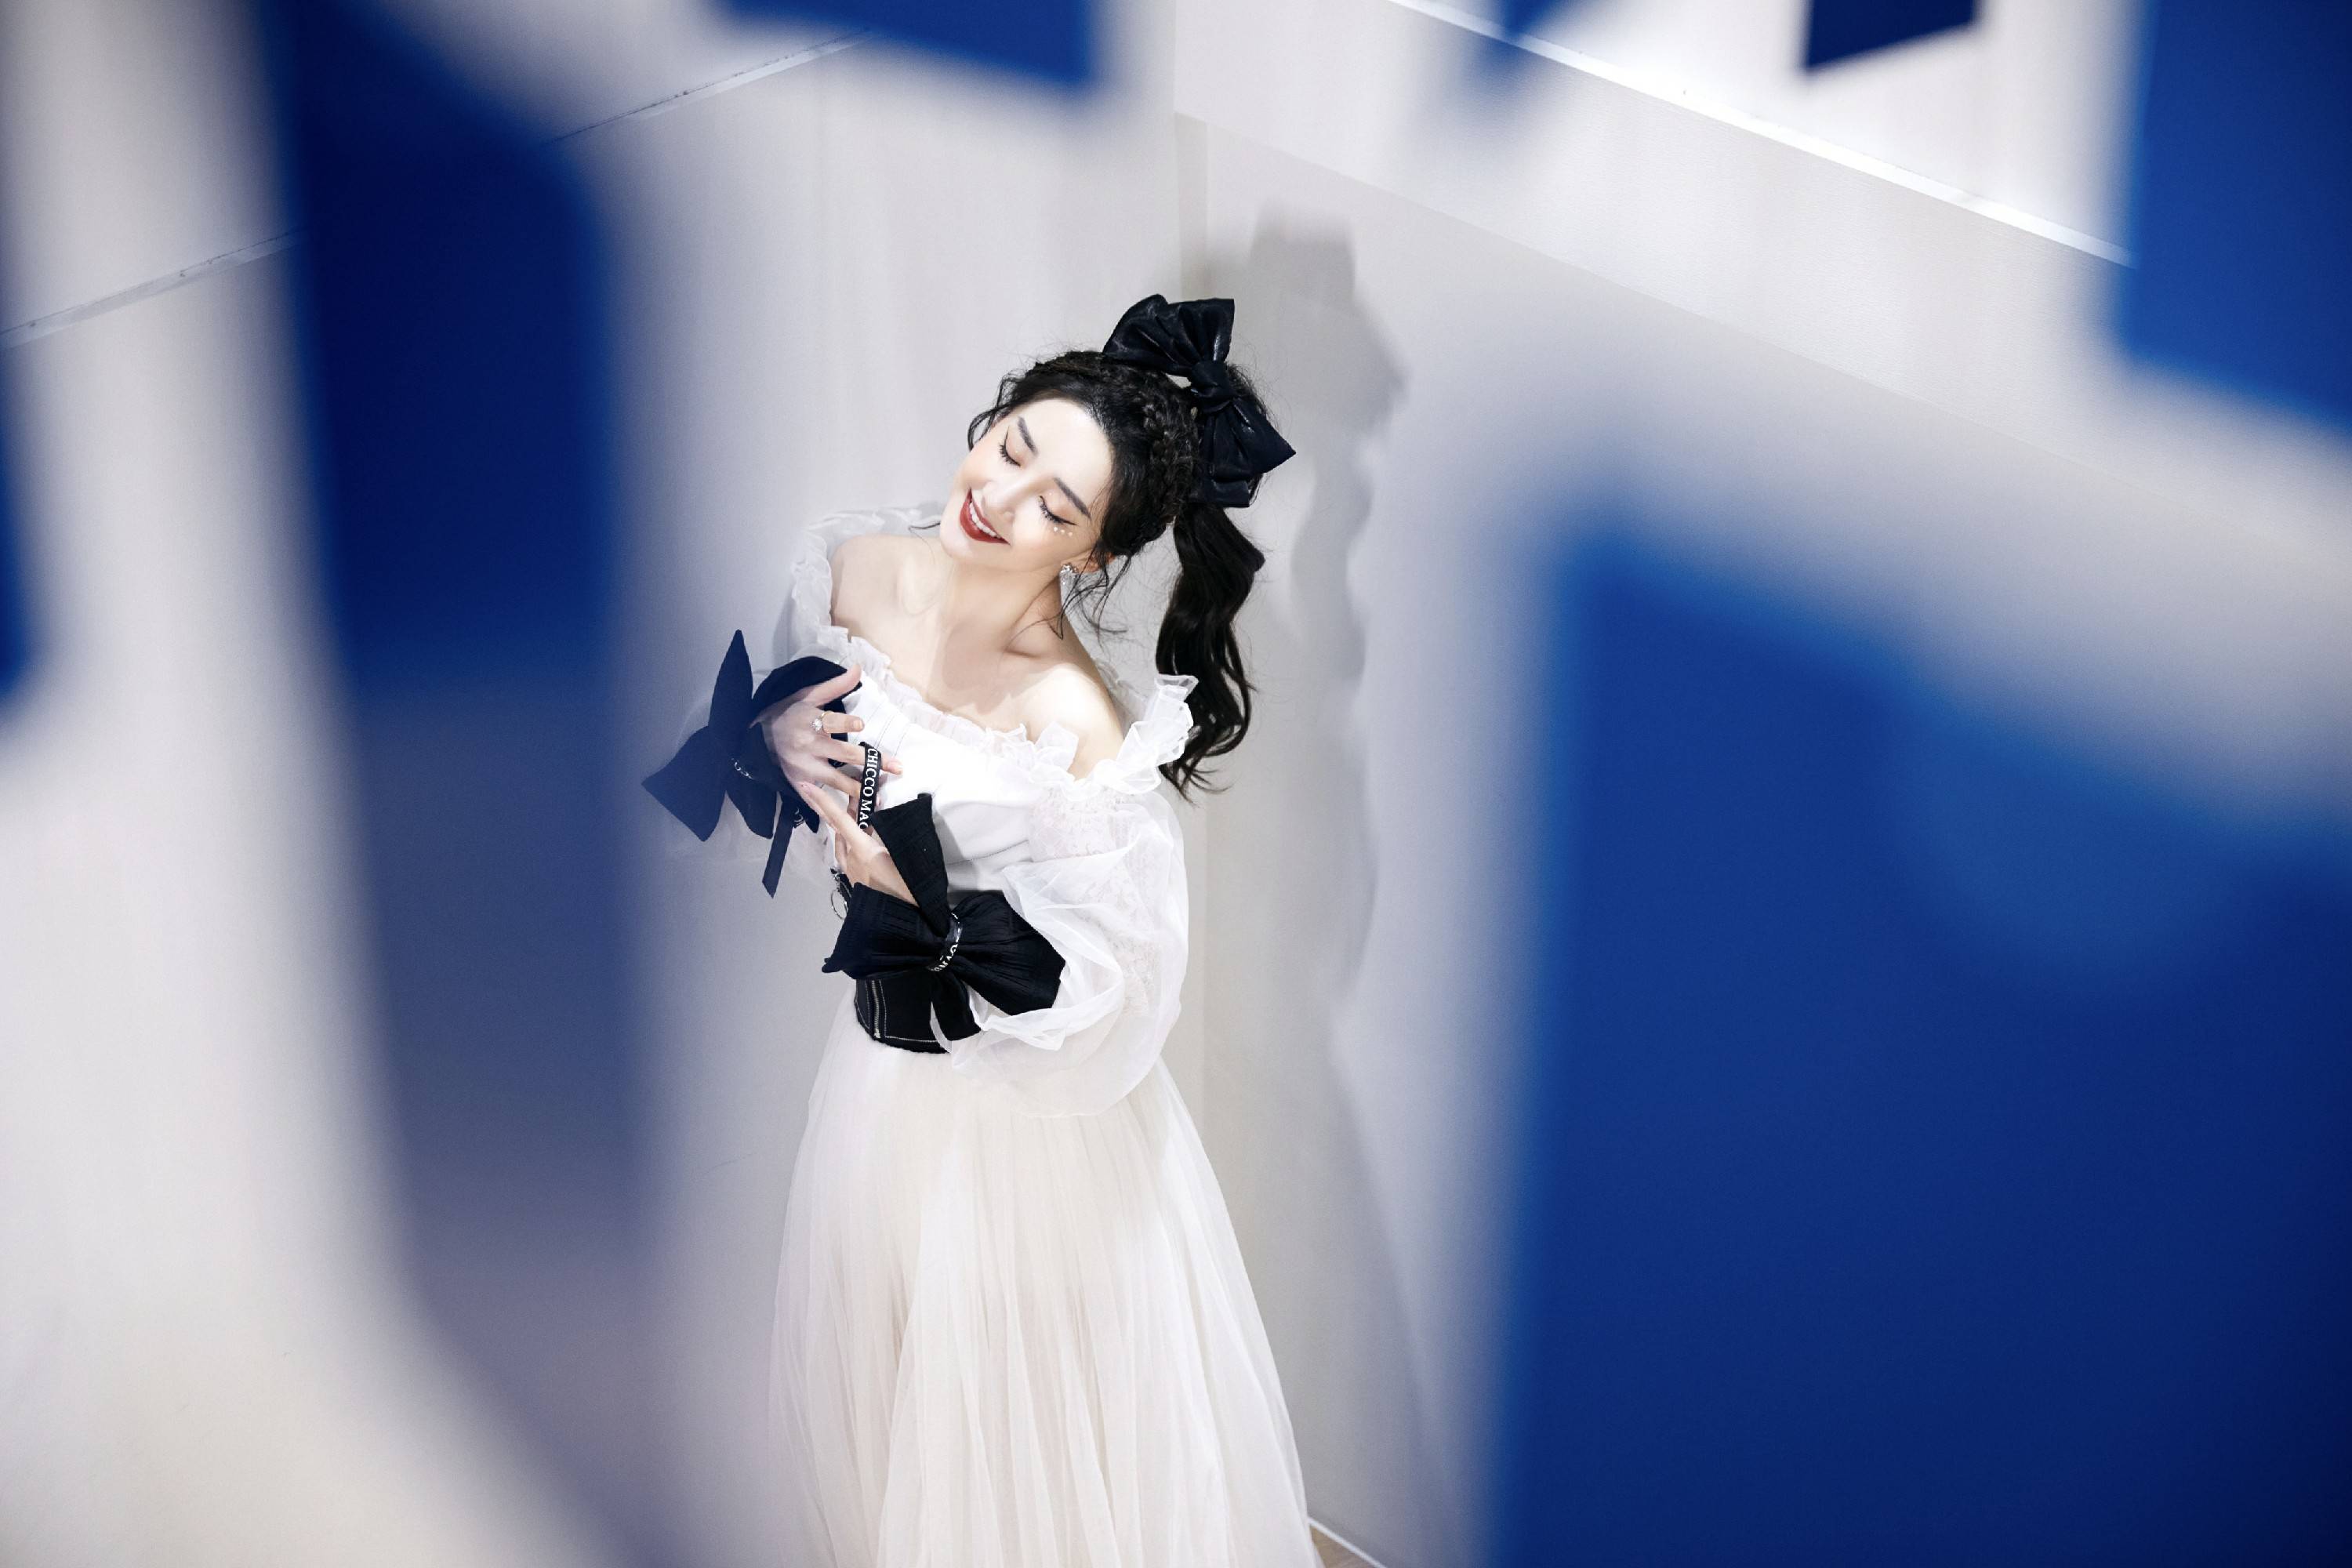 陈欣予亮相中国国际时装周白纱长裙梦幻灵动诠释百变时尚感